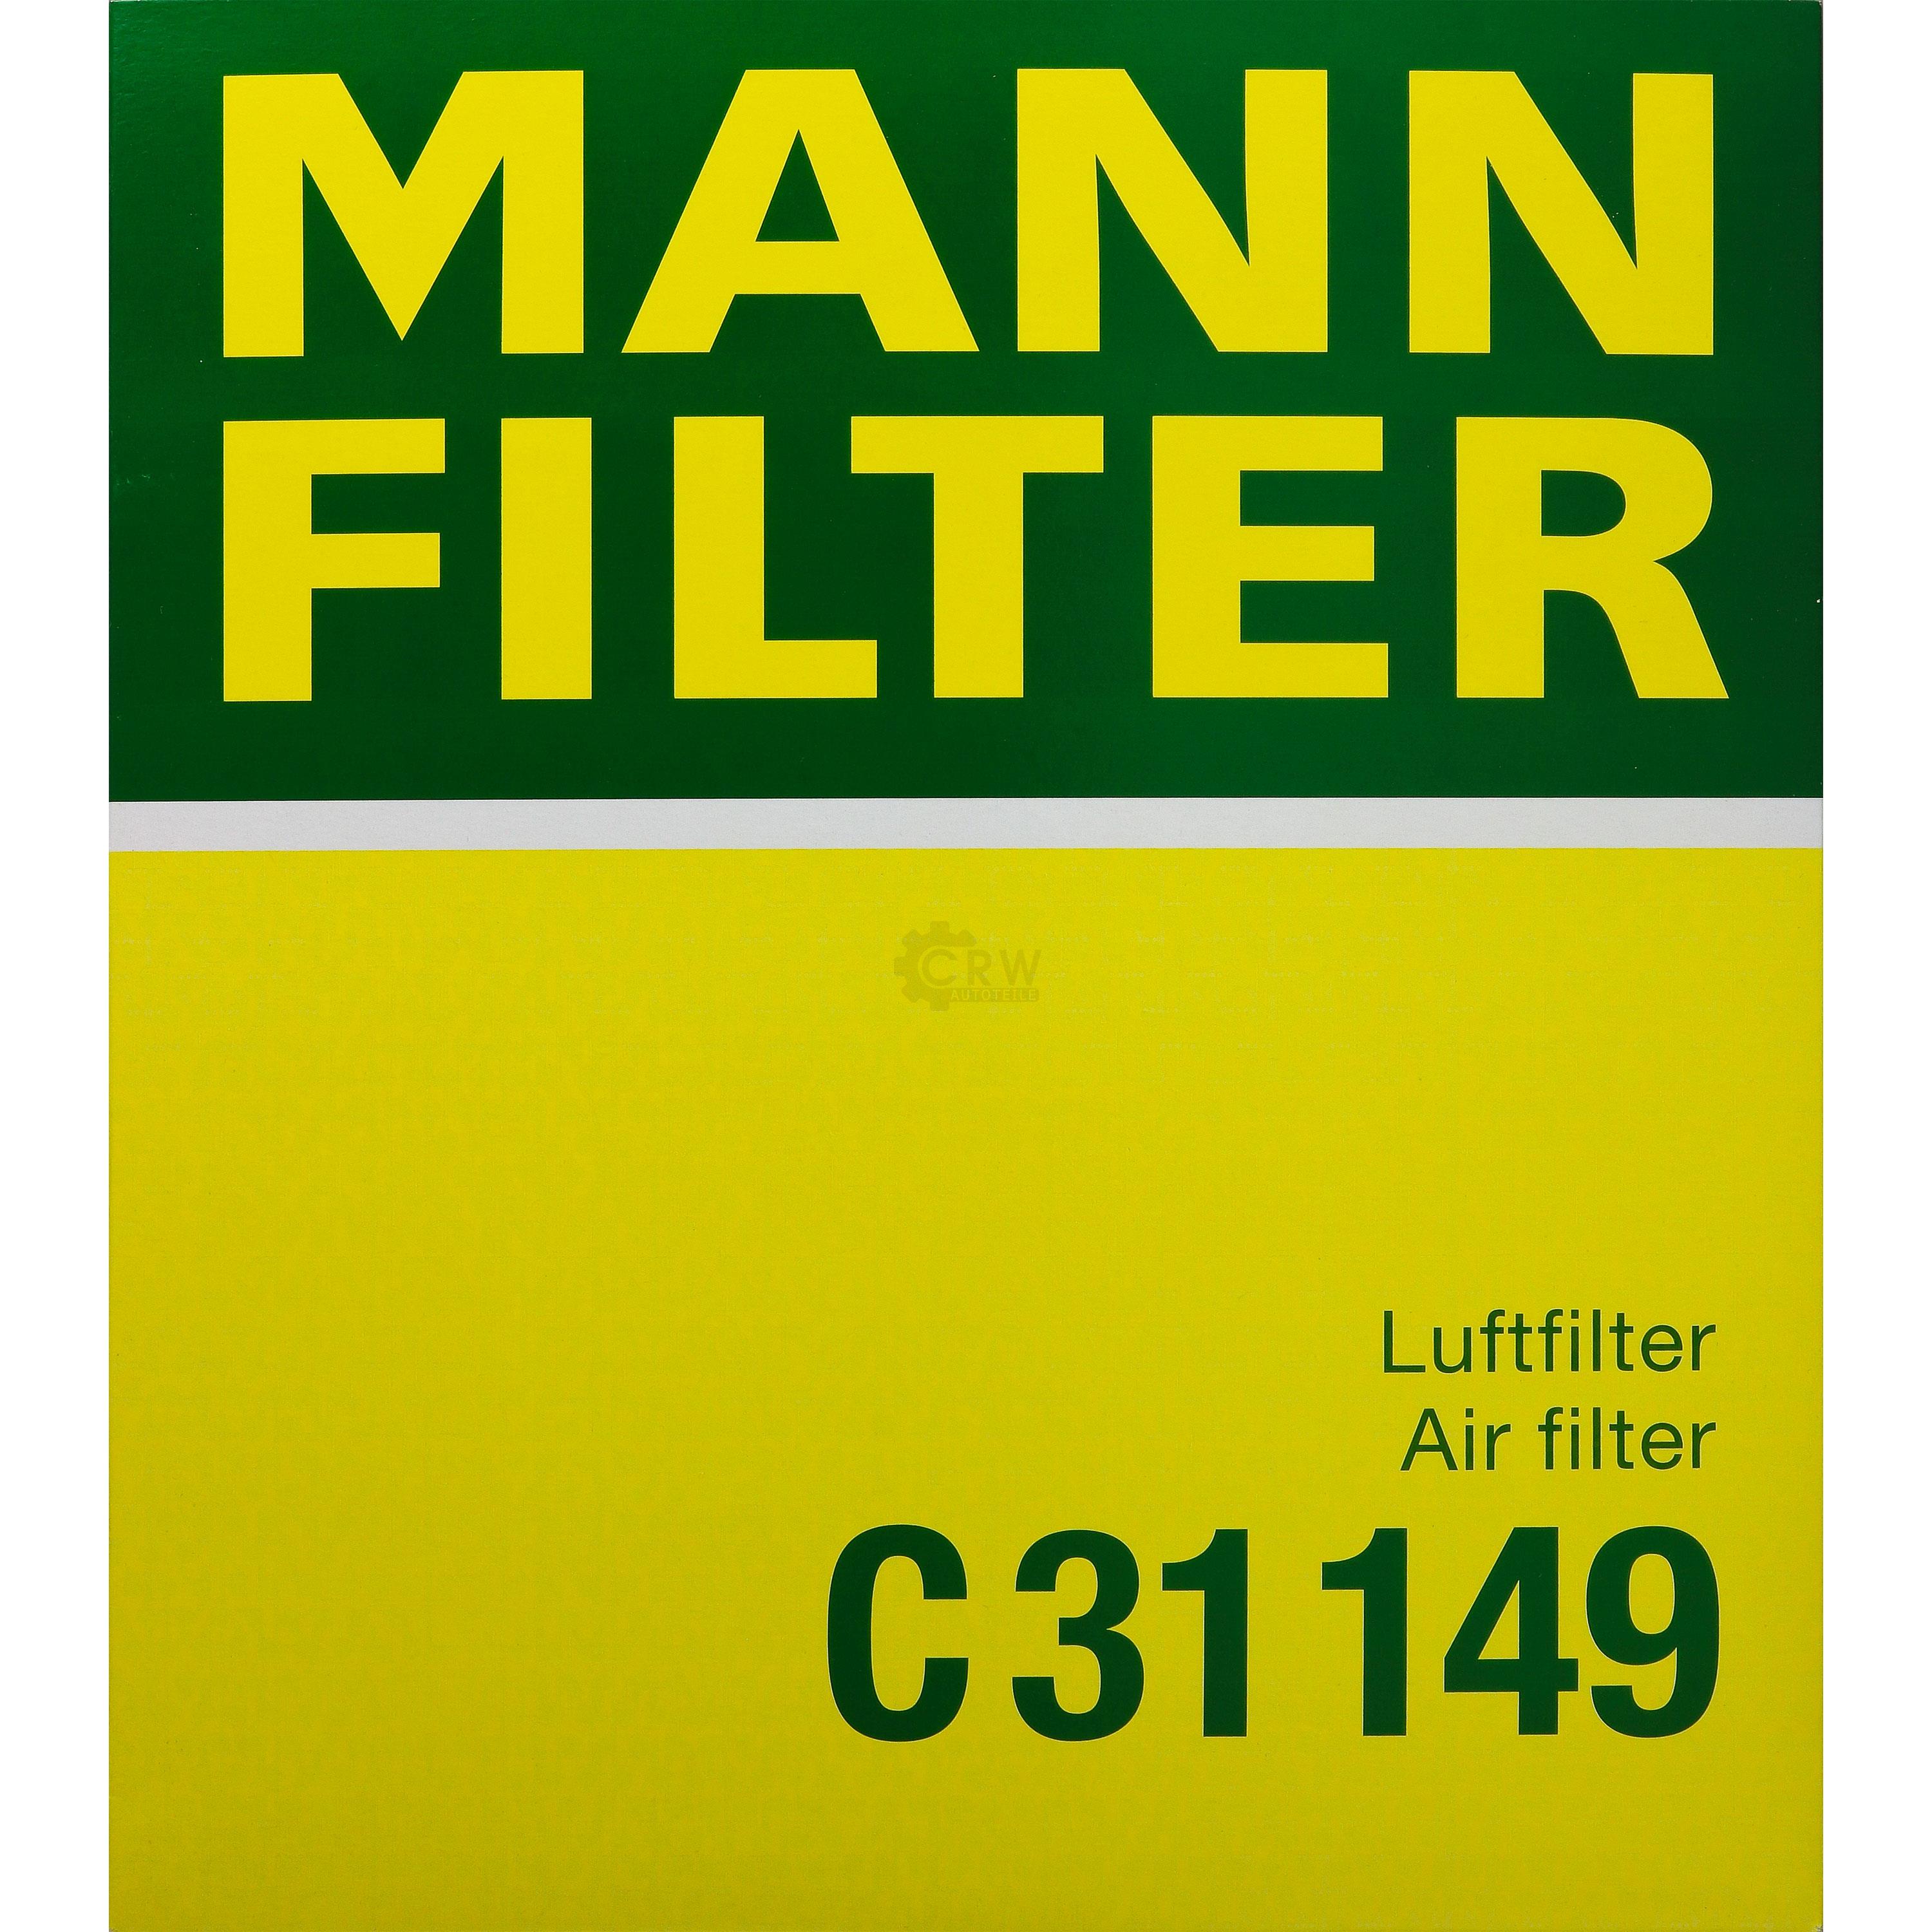 MANN-FILTER Luftfilter für BMW 6er Cabriolet E64 650i 645 Ci E63 E60 520i 545i